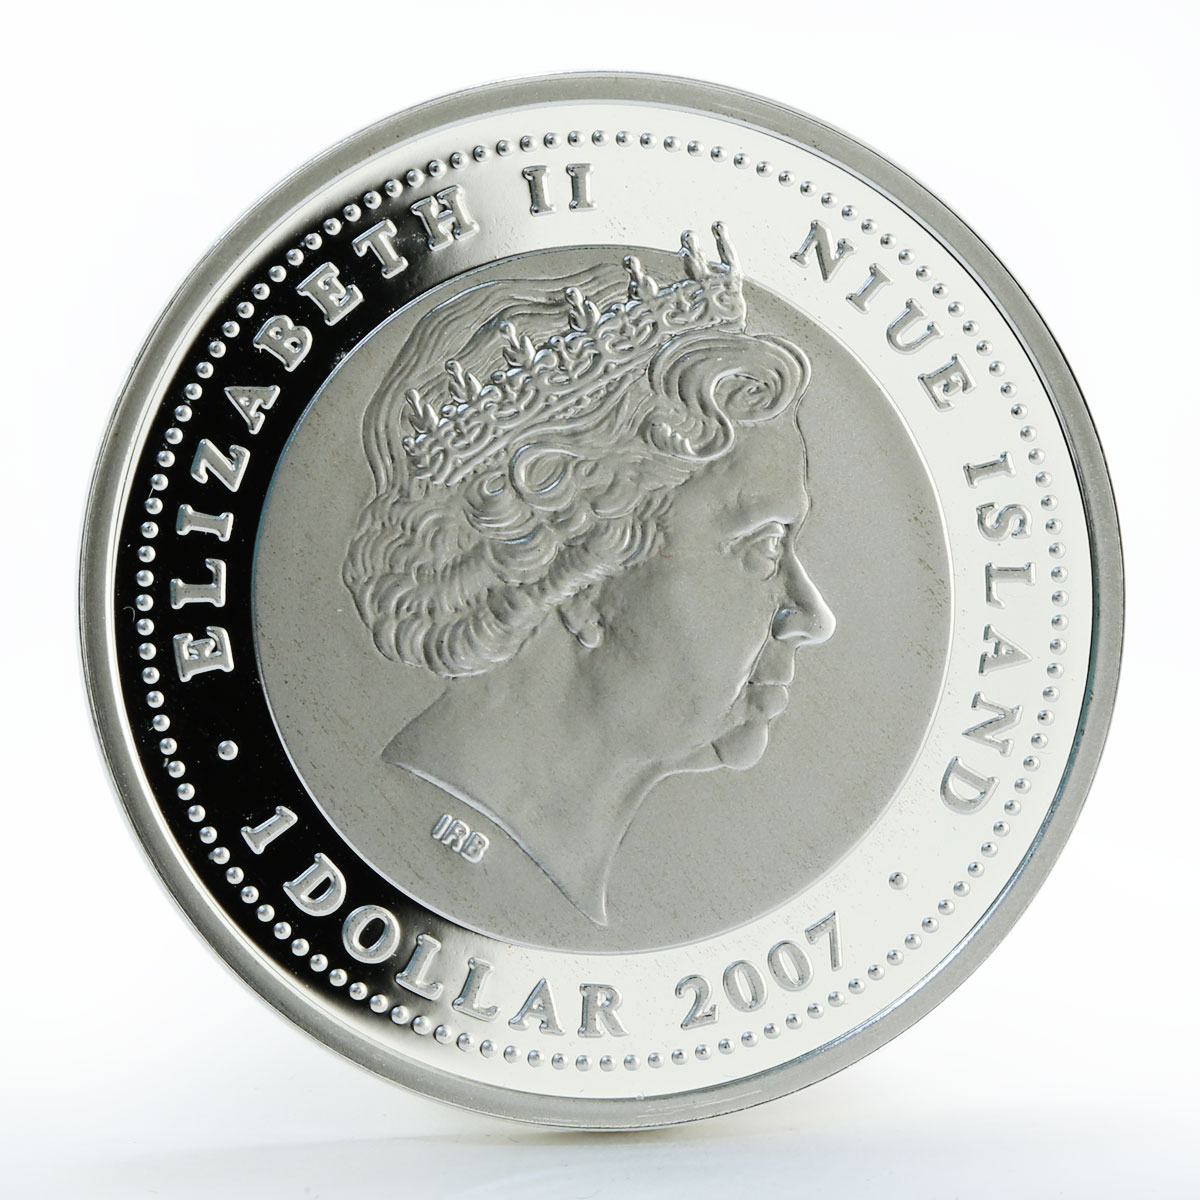 Niue 1 dollar Tobolsk color silver coin 2007